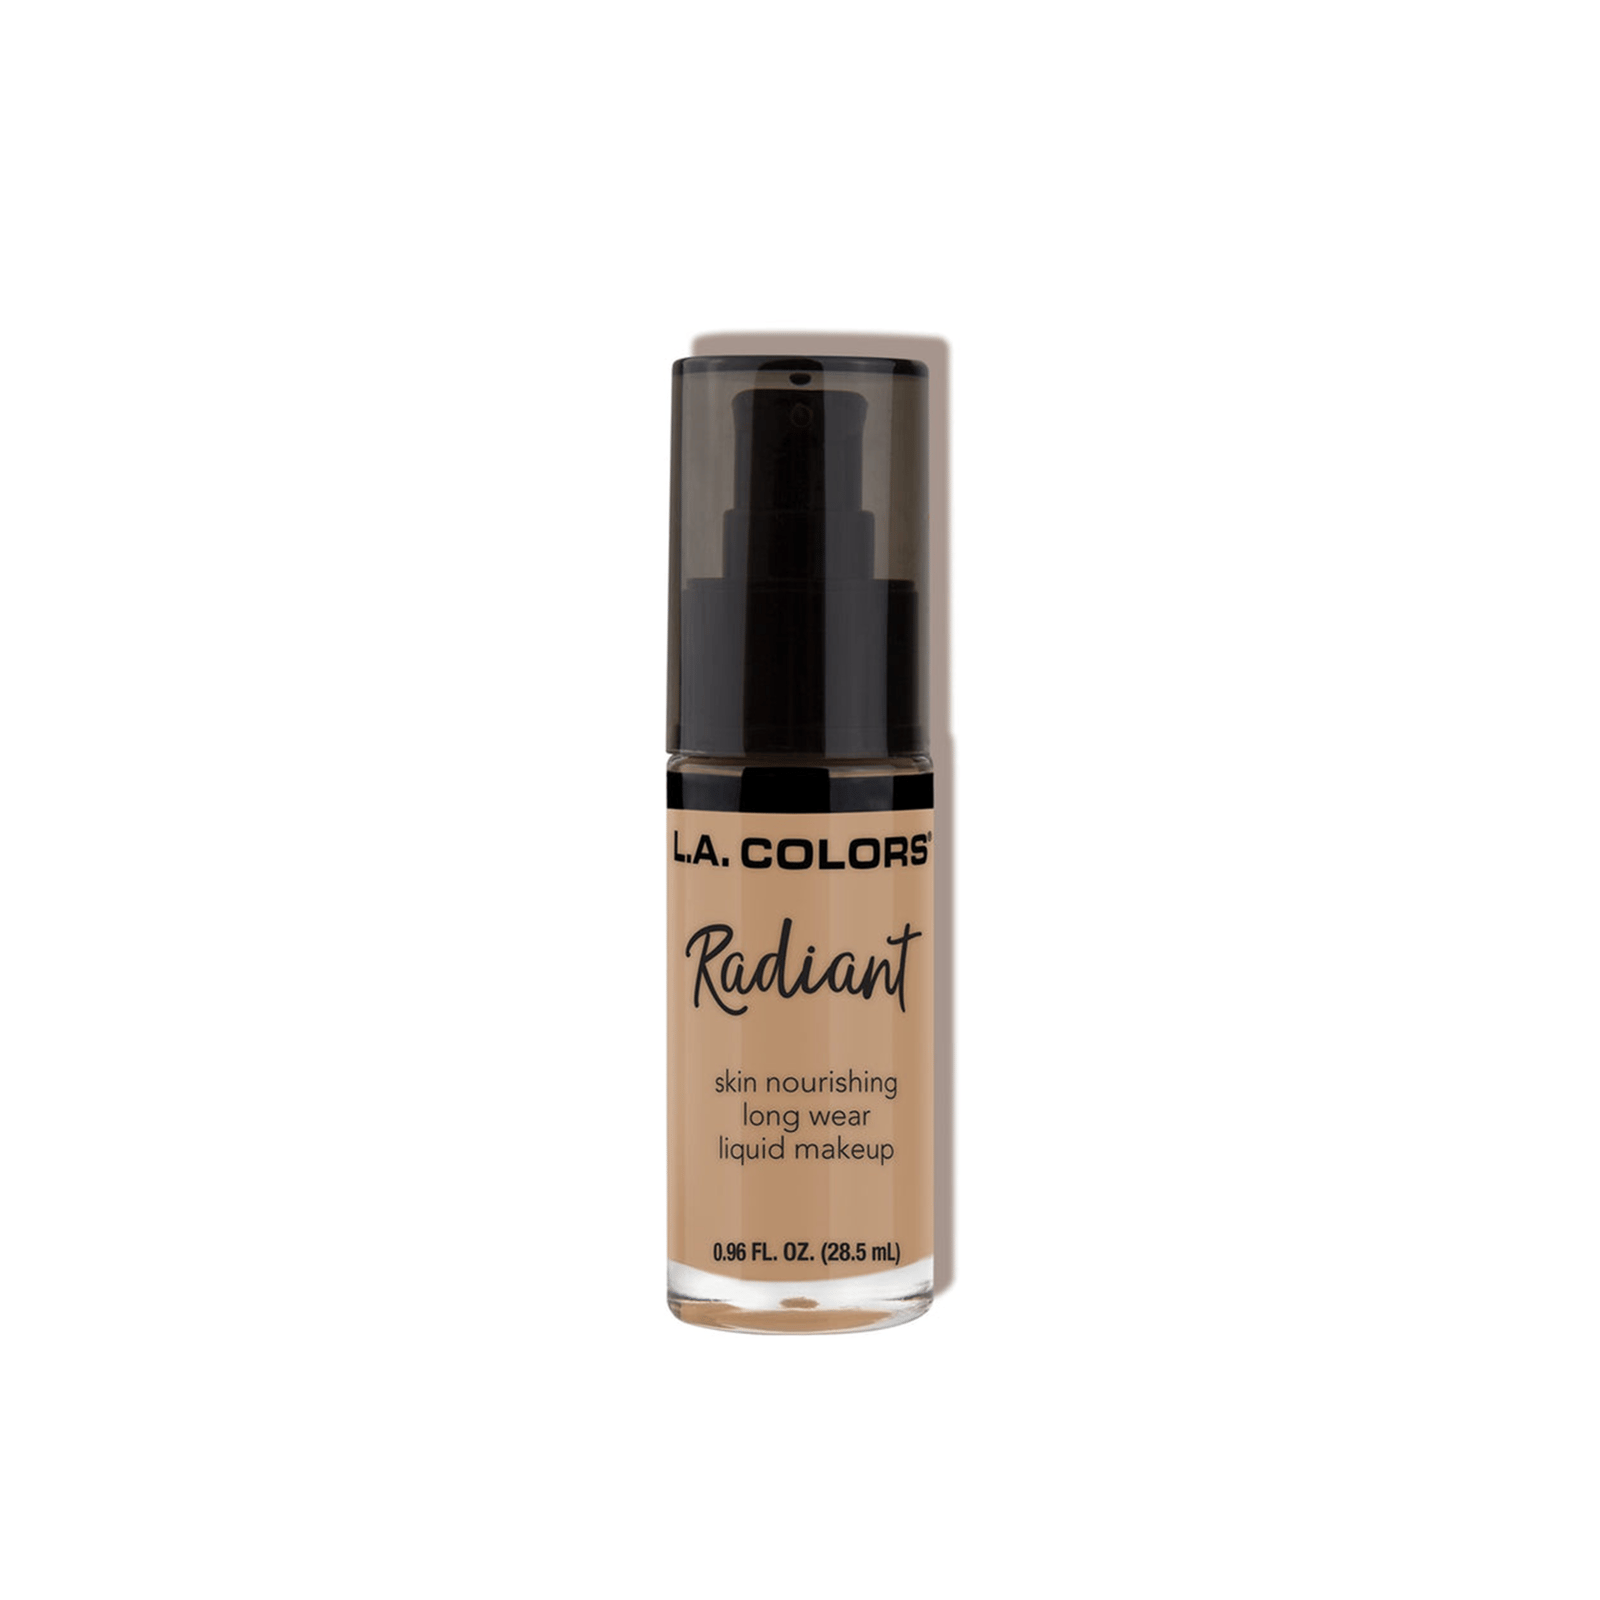 L.A. Colors Radiant Liquid Makeup Foundation CLM389 Medium Beige 28.5ml (0.96 fl oz)